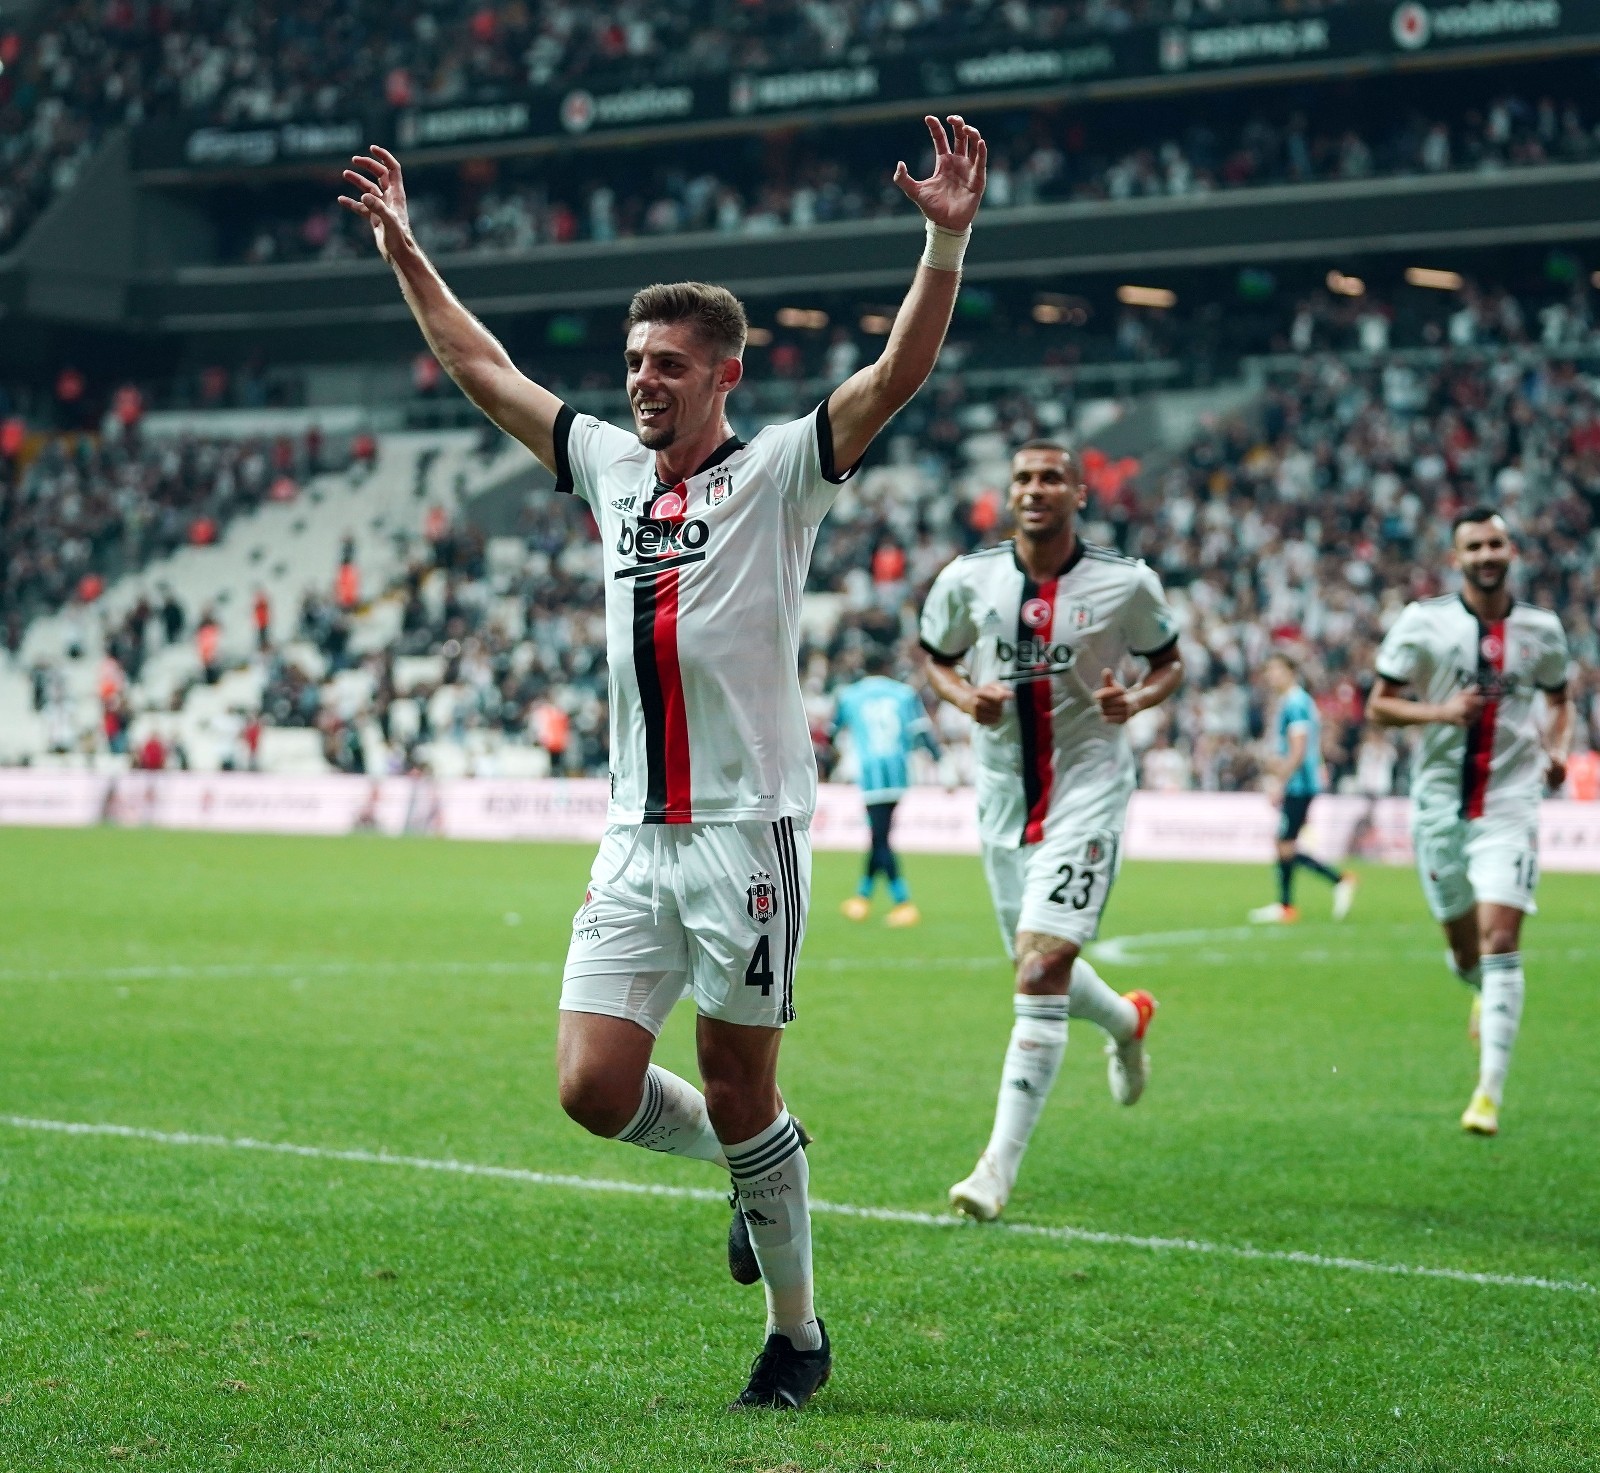 Montero’nun Süper Lig’deki ilk gol sevinci! #istanbul